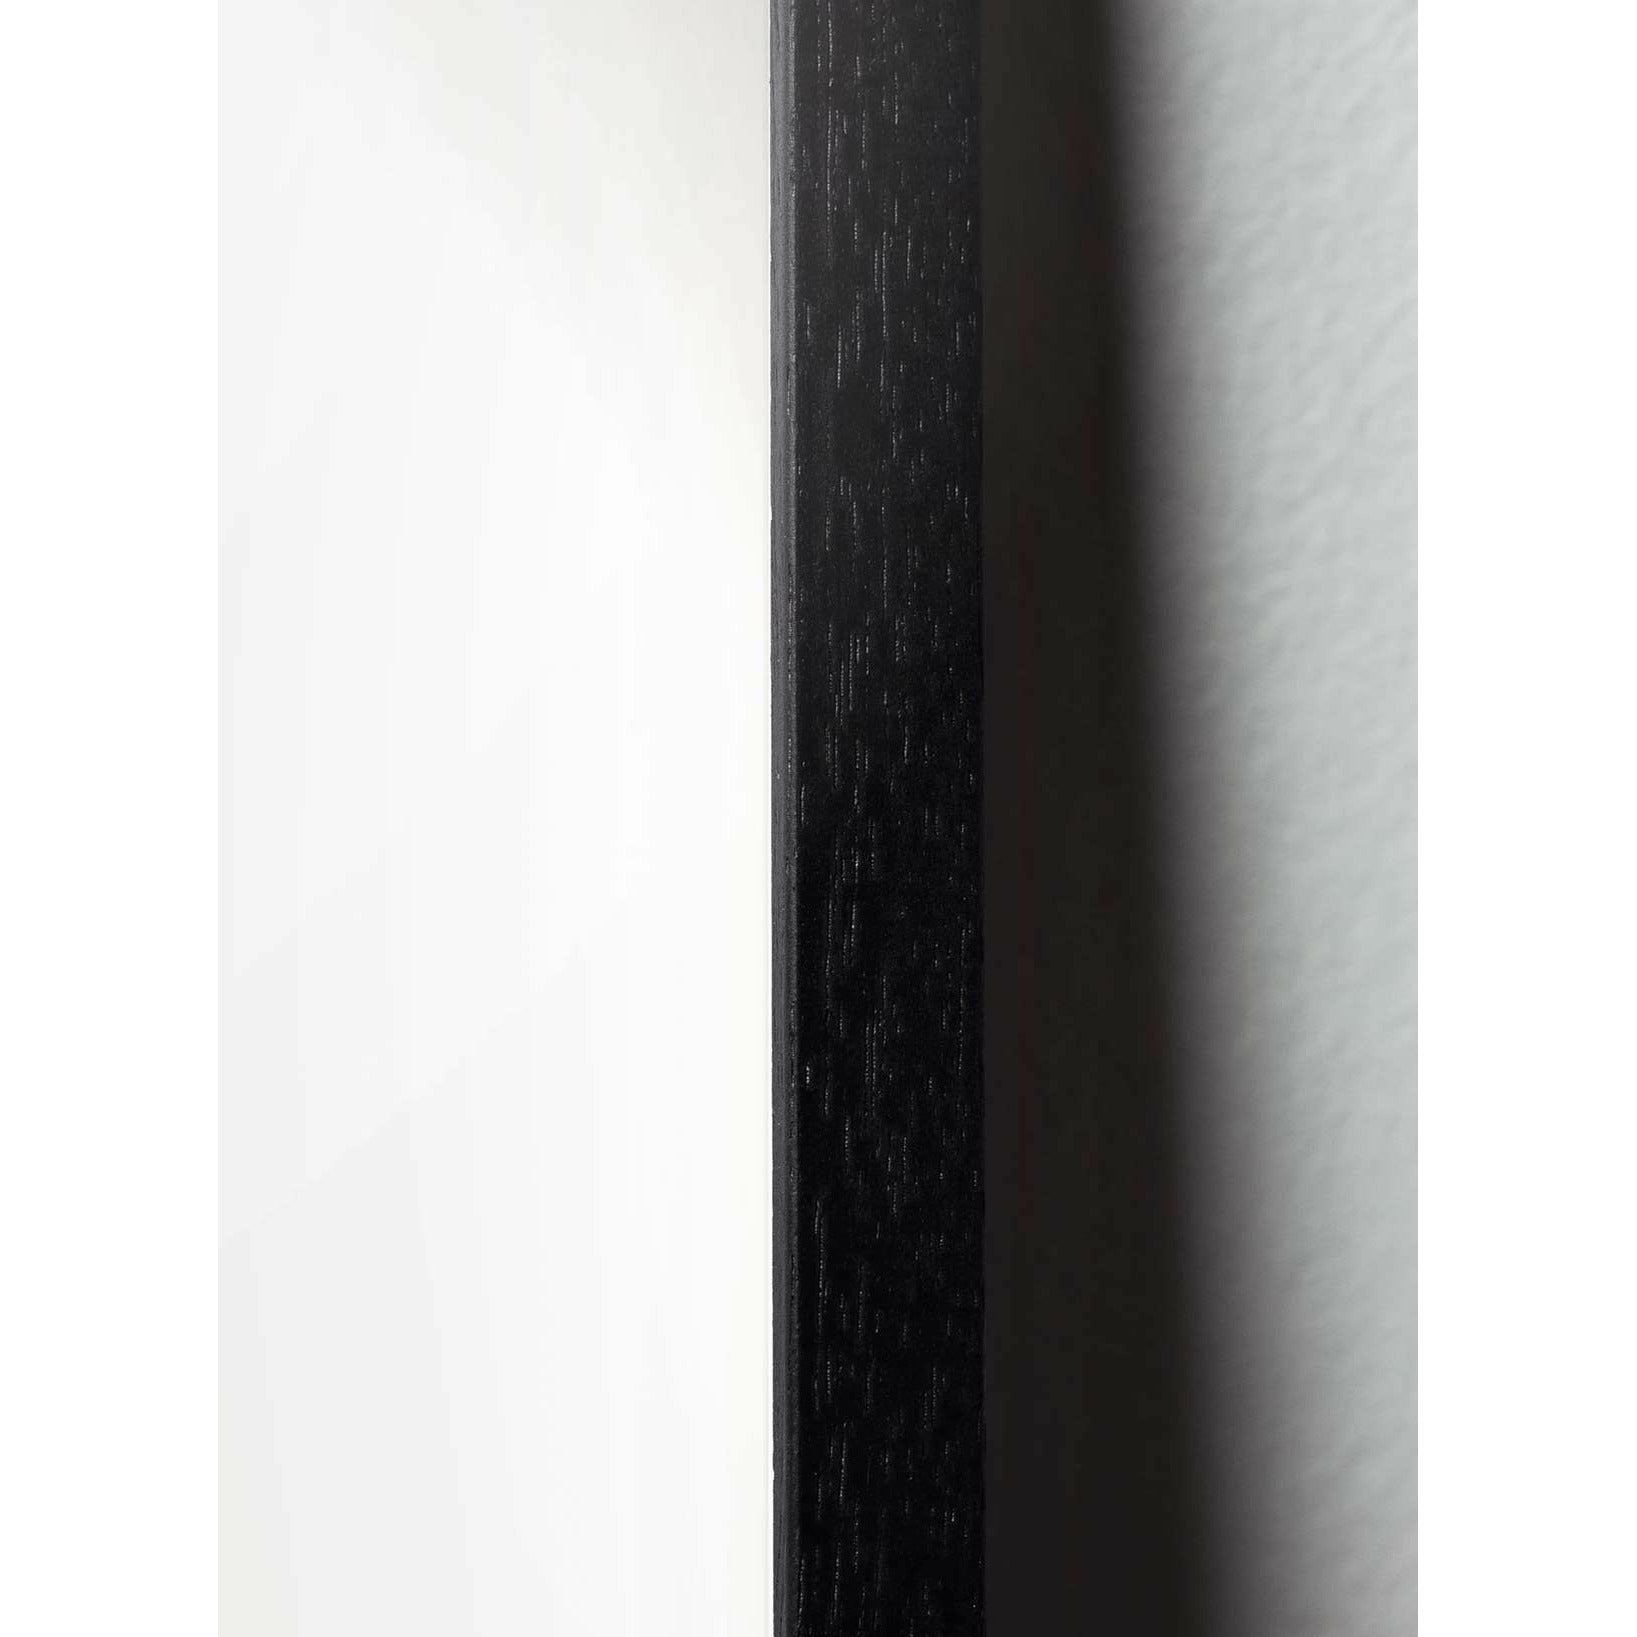 Póster de formato de cruce de huevo de creación, marco en madera lacada negra A5, negro